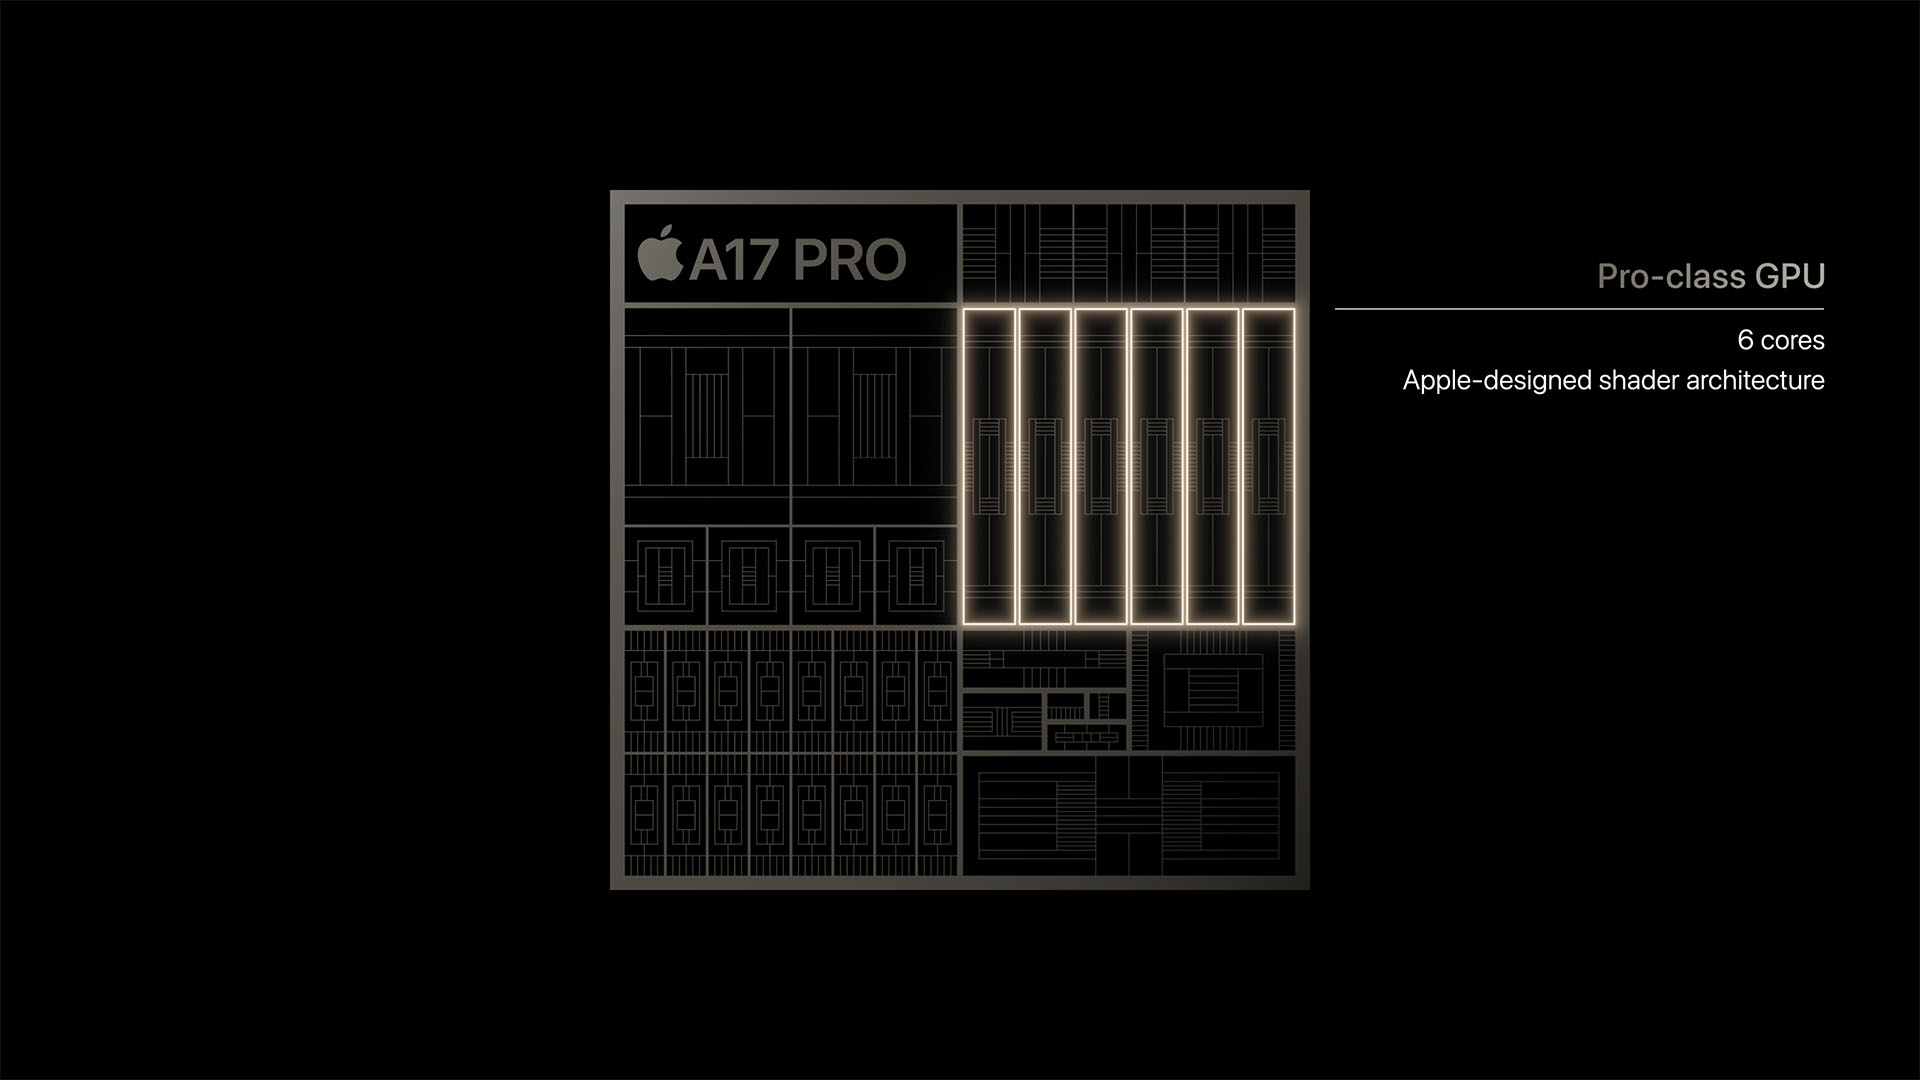 Hivatalos az iPhone 15 széria - A17 Pro GPU részlege